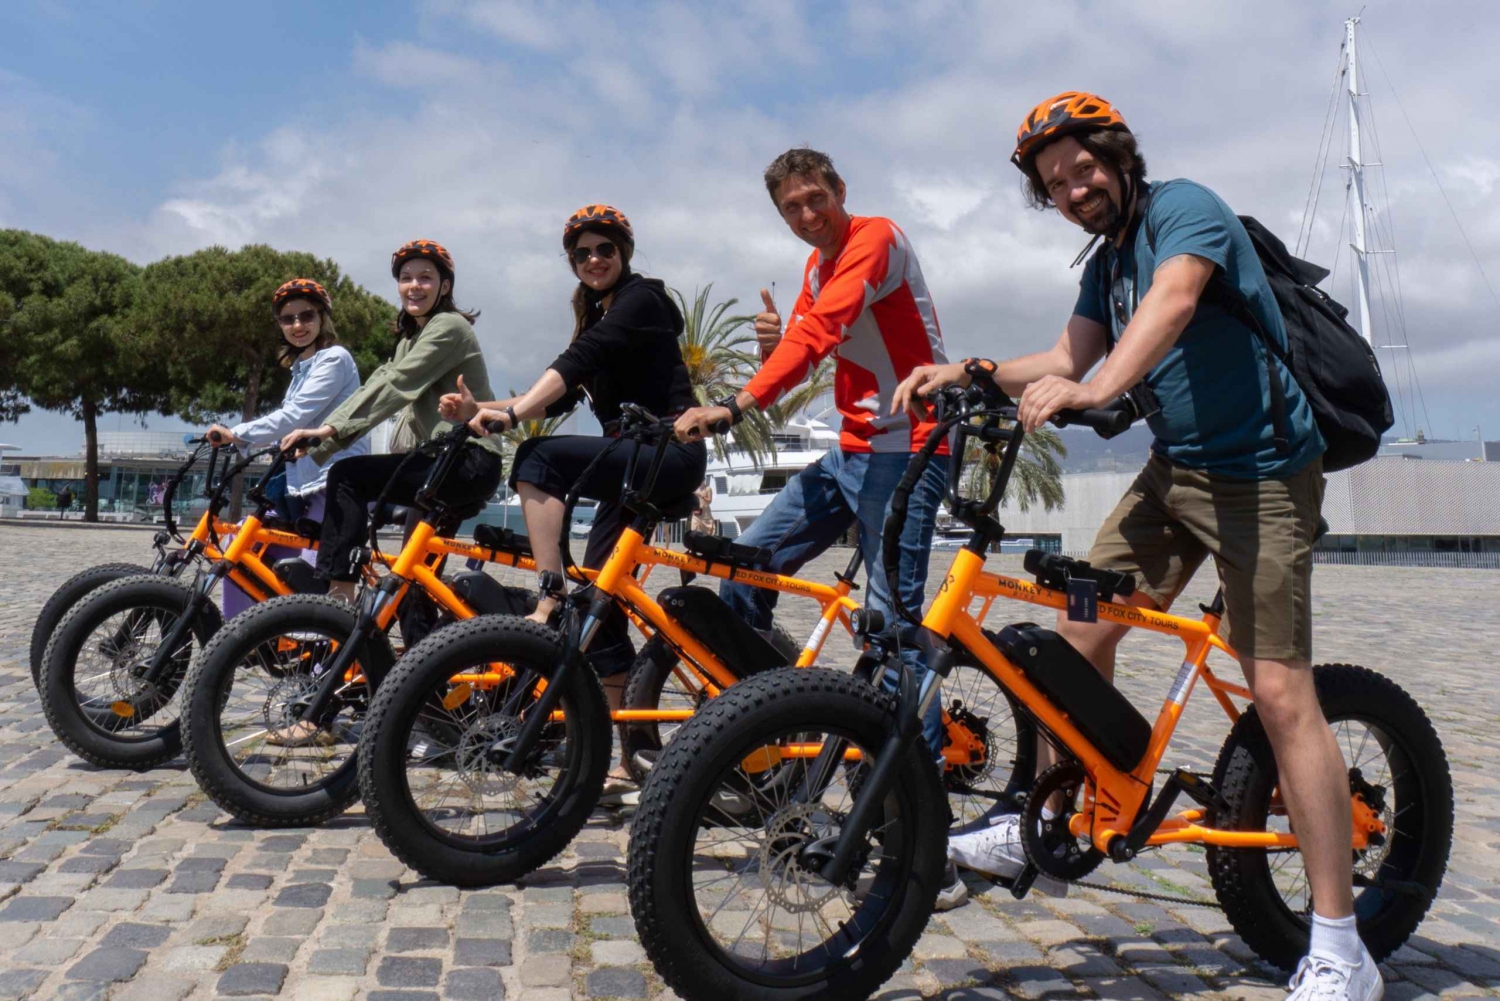 Barcelona: Os 20 destaques de Barcelona: tour guiado de E-Scooter ou E-Bike